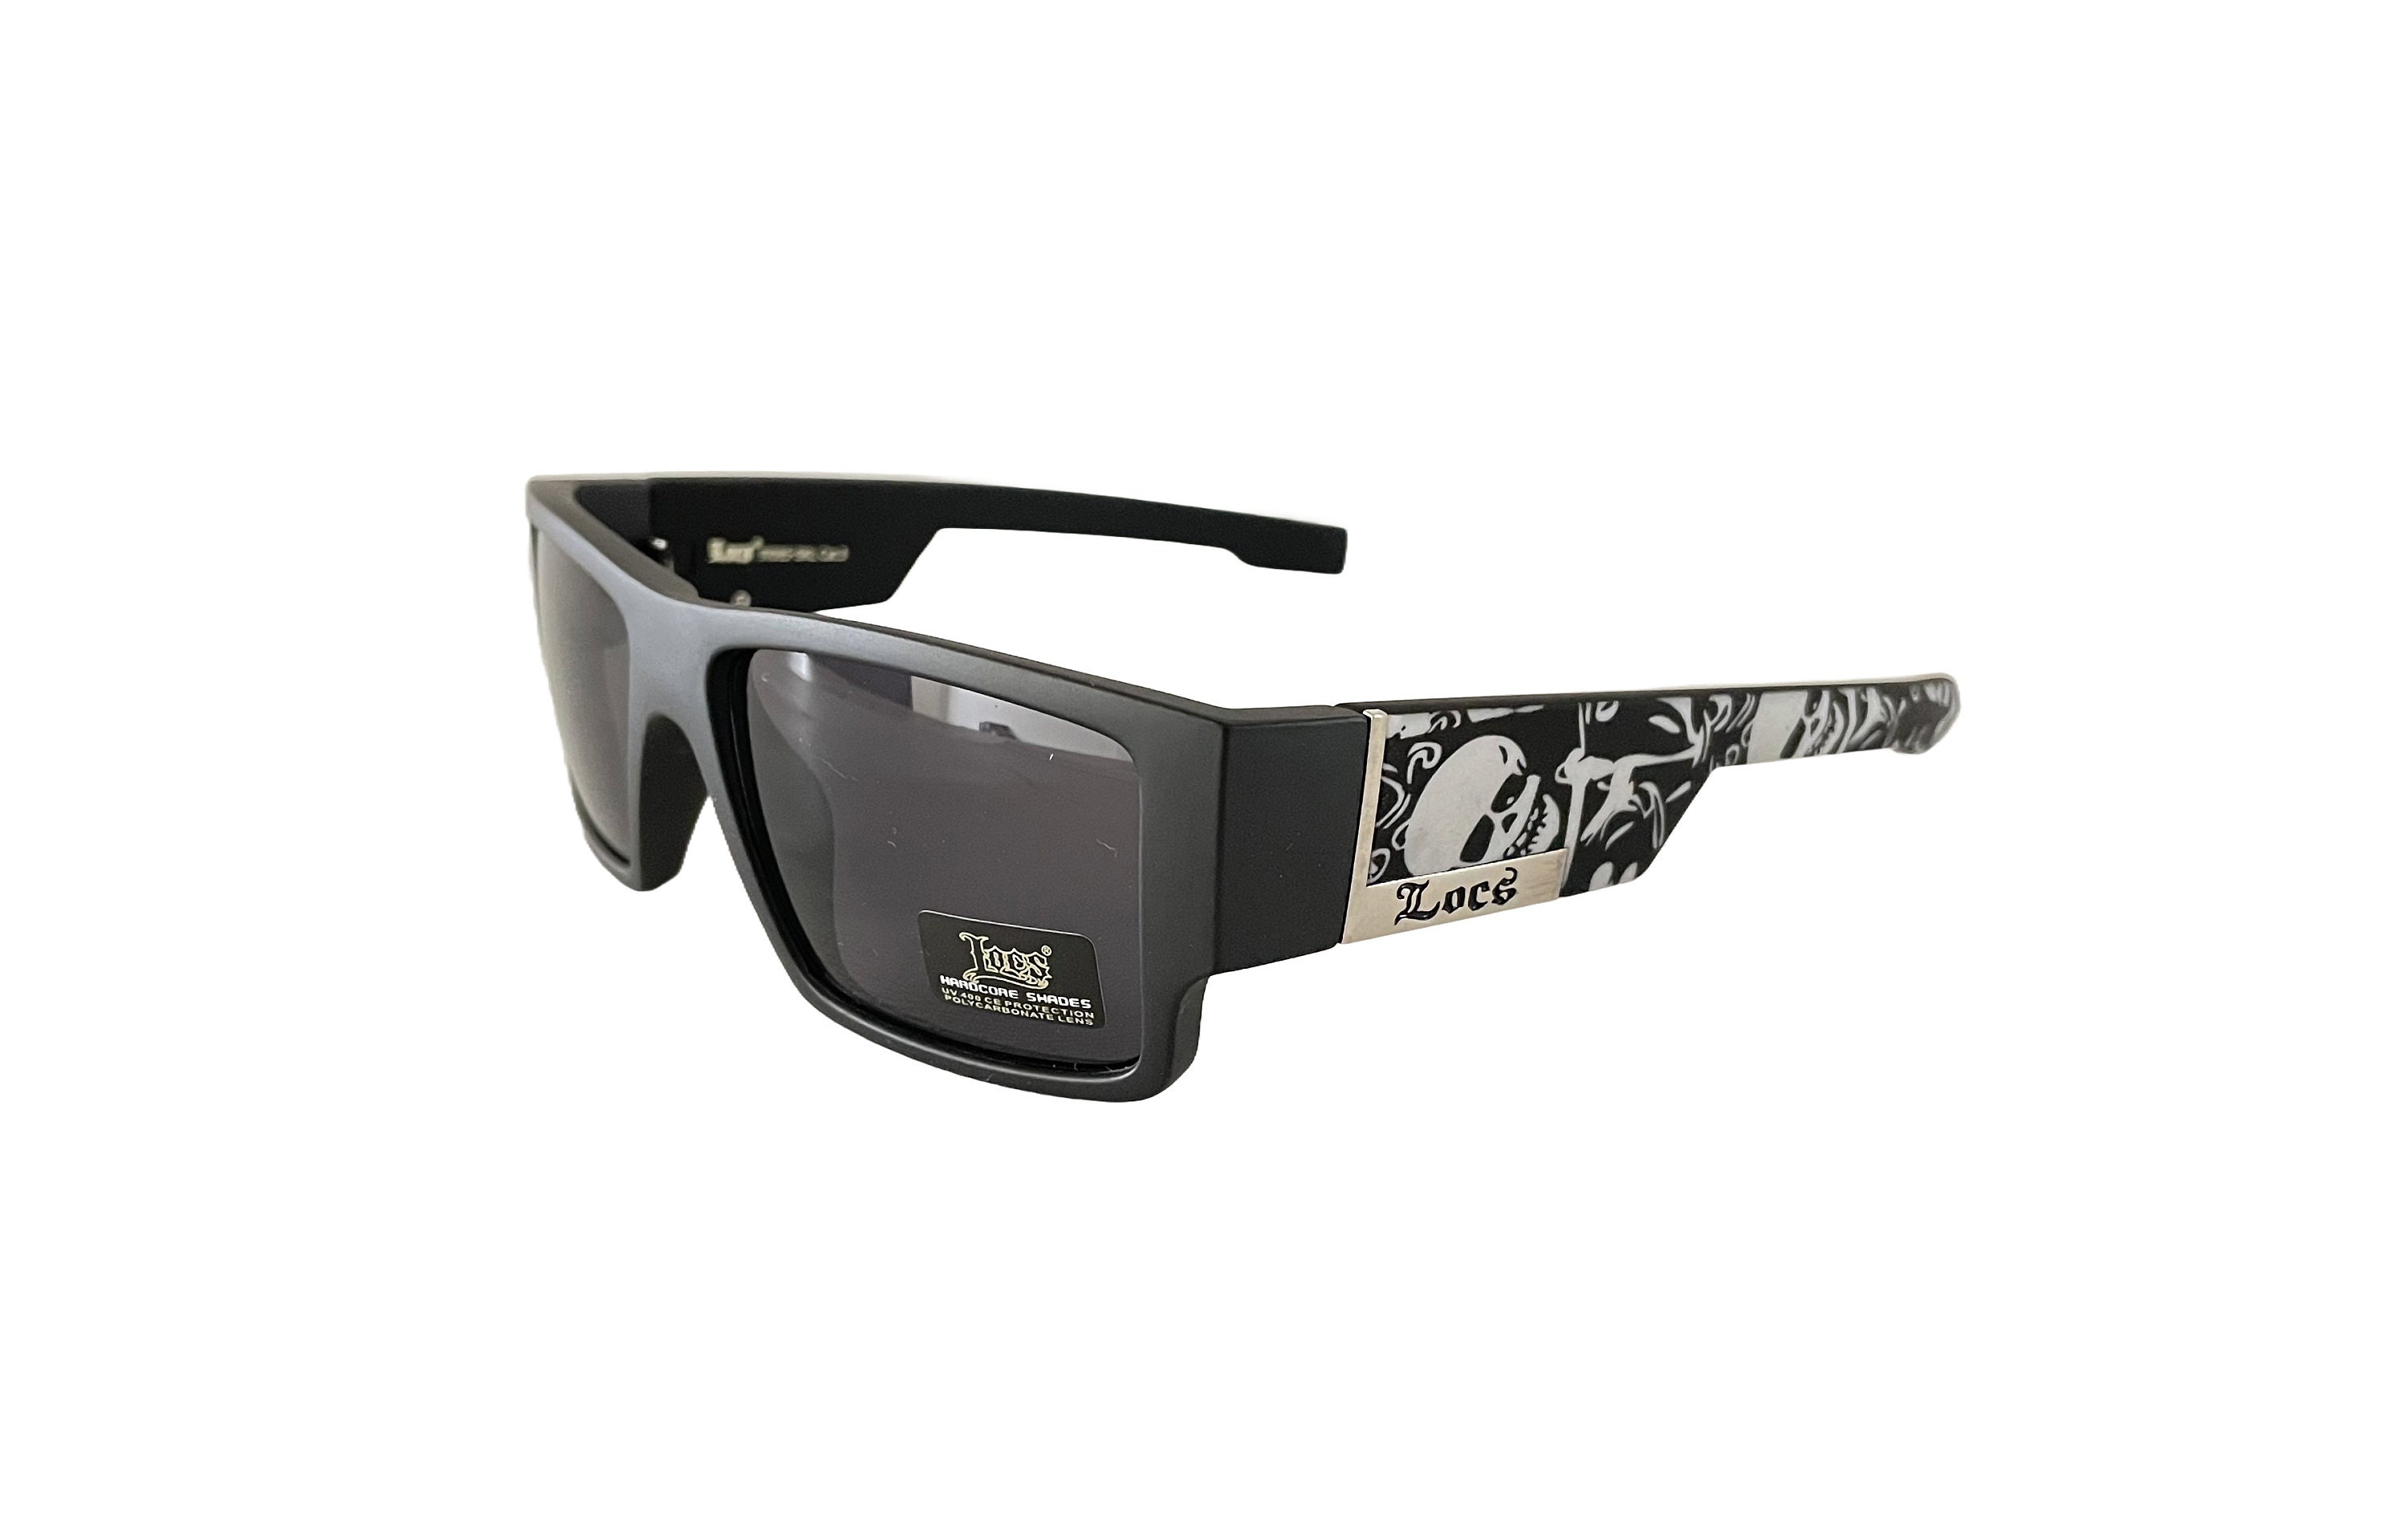 Locs All Black Sunglasses OG Super Dark Easy-e Style Glasses 